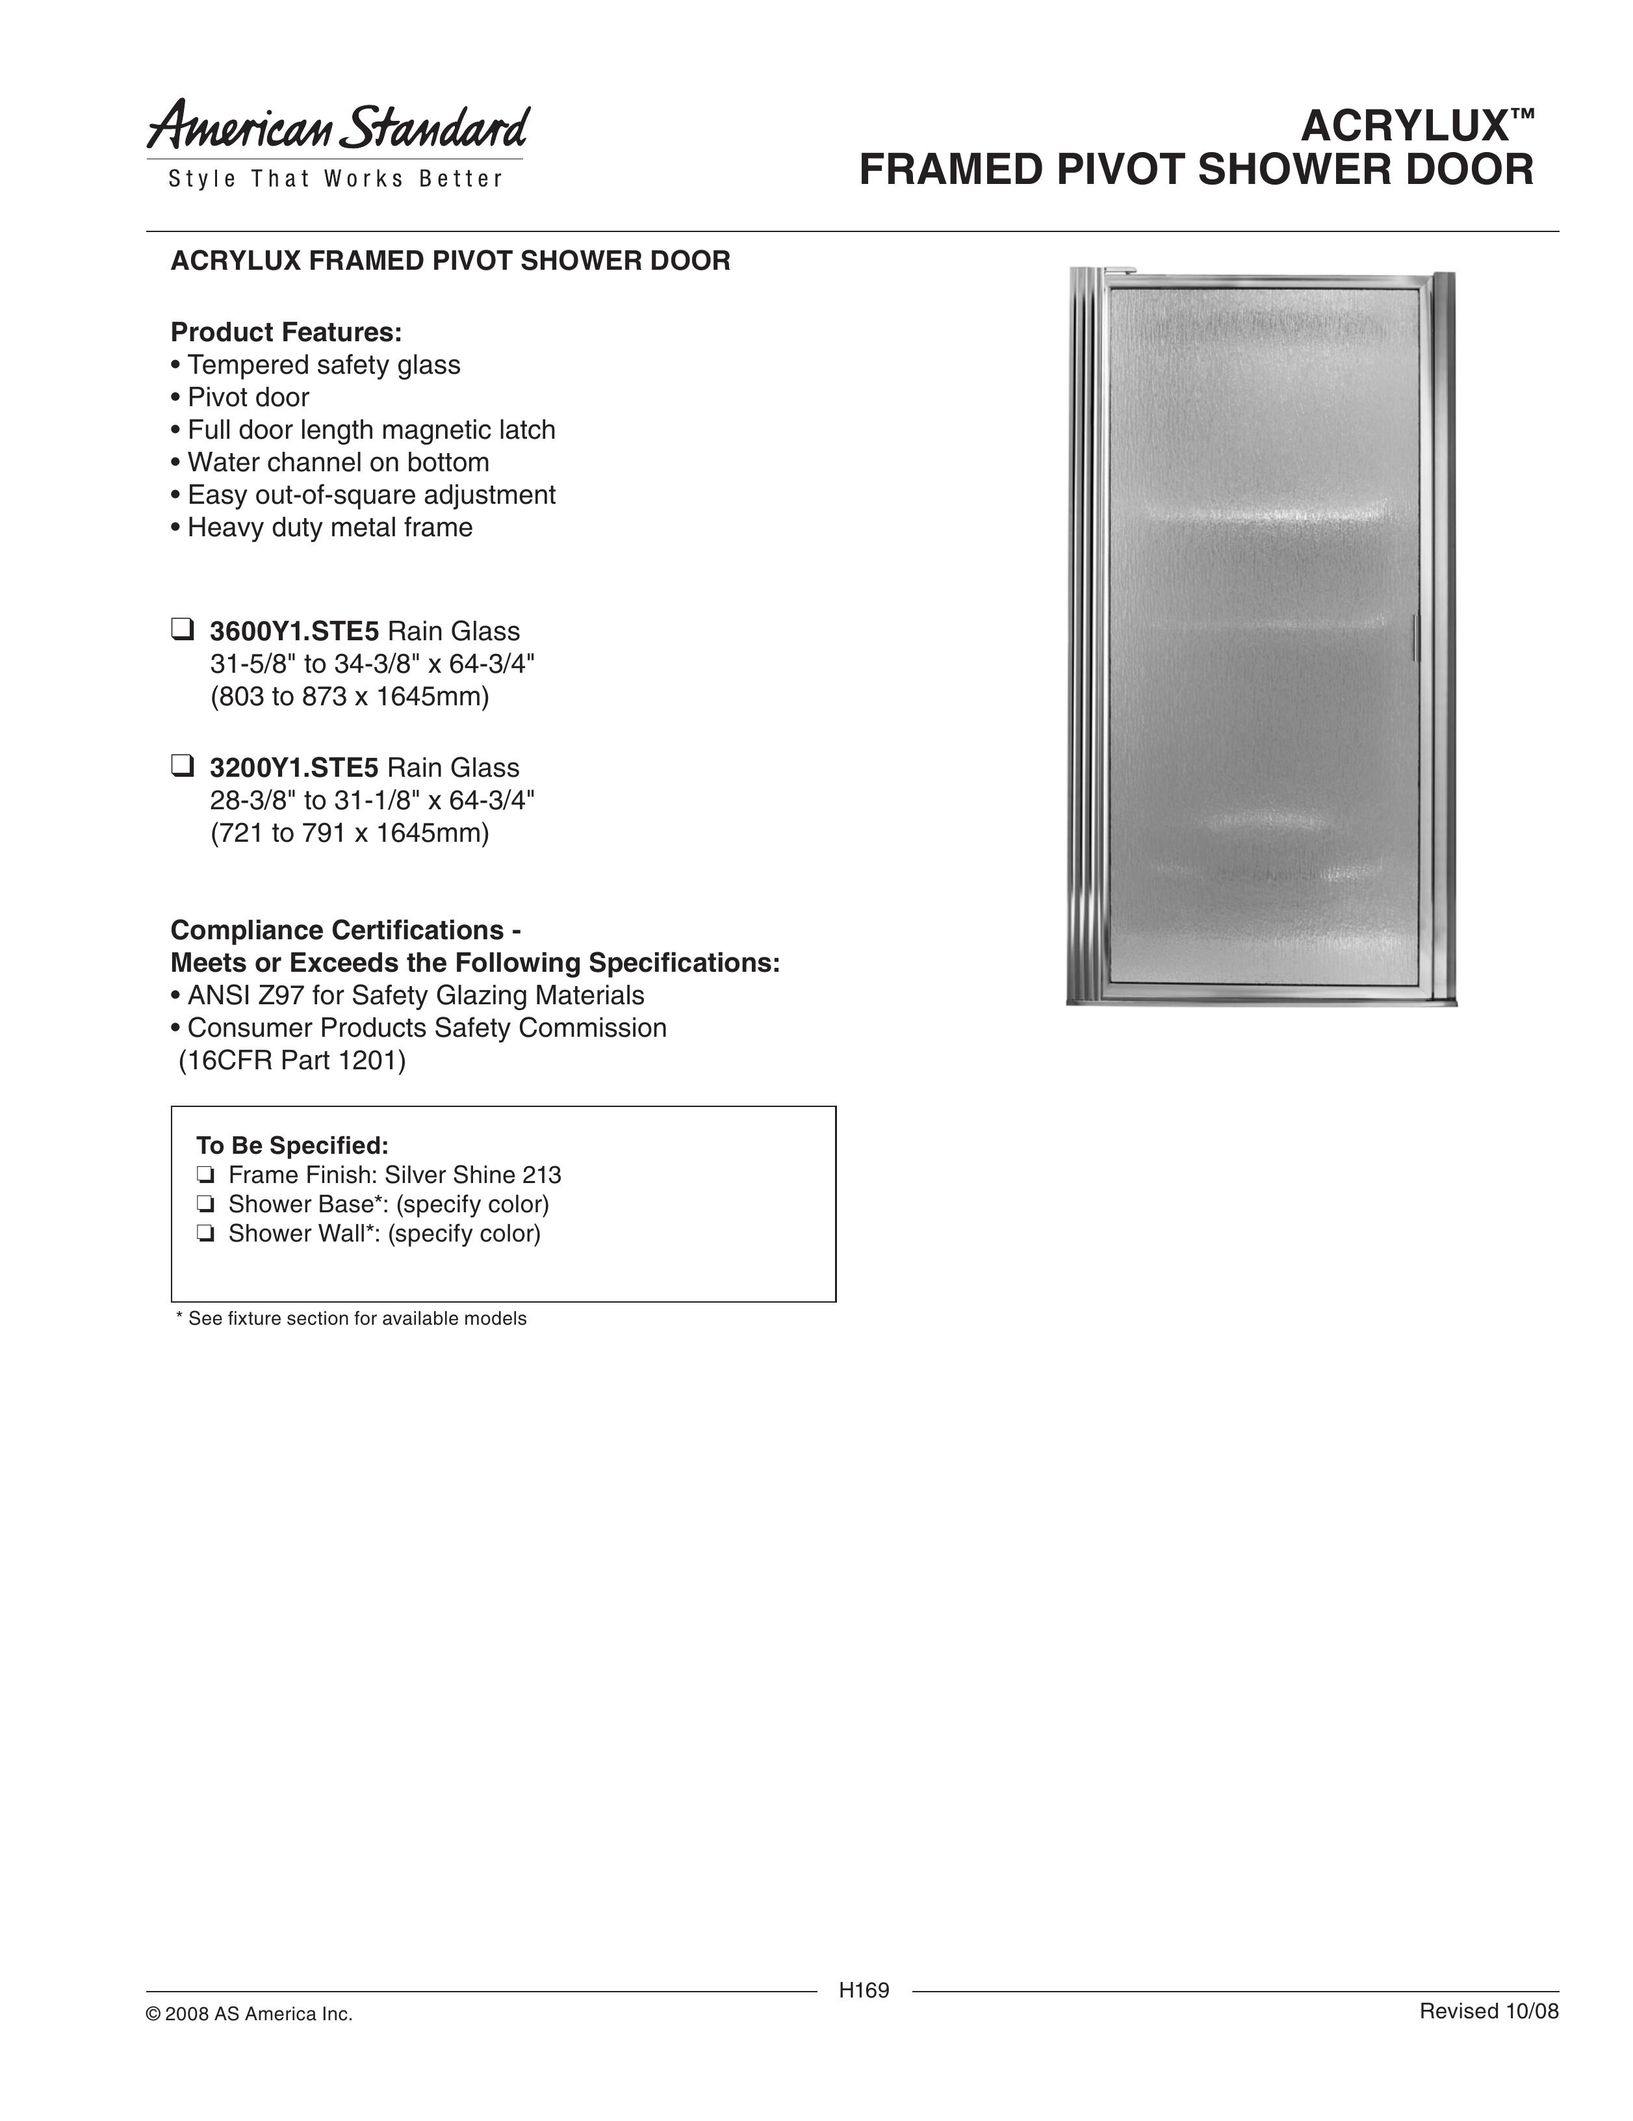 American Standard 3600Y1.STE5 Door User Manual